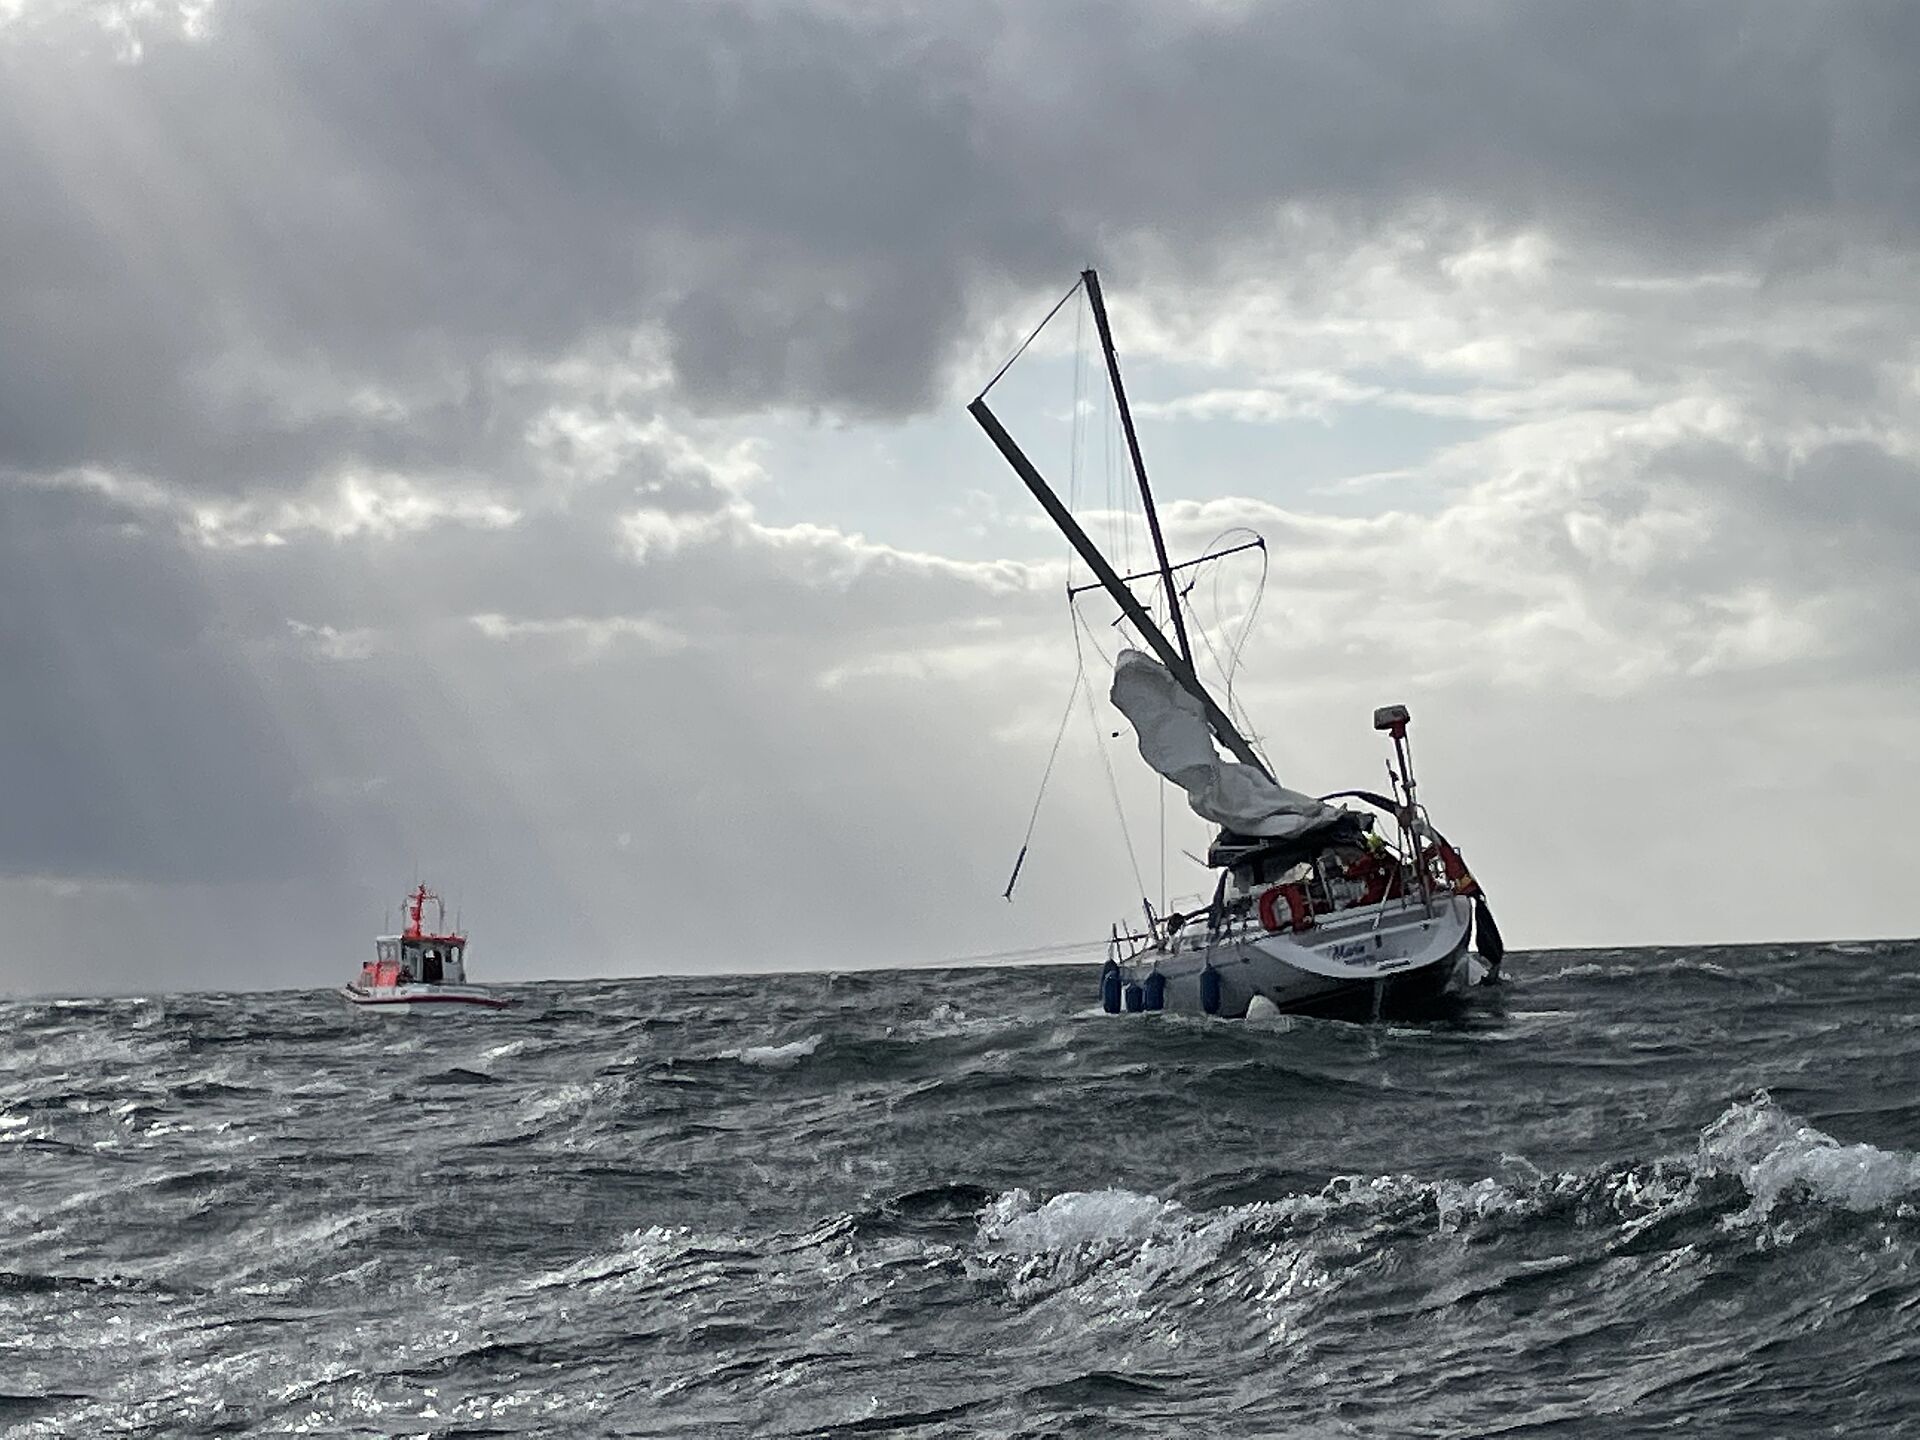 Mastbruch bei Starkwind auf der Ostsee – Seenotretter befreien sieben Segler aus Gefahr